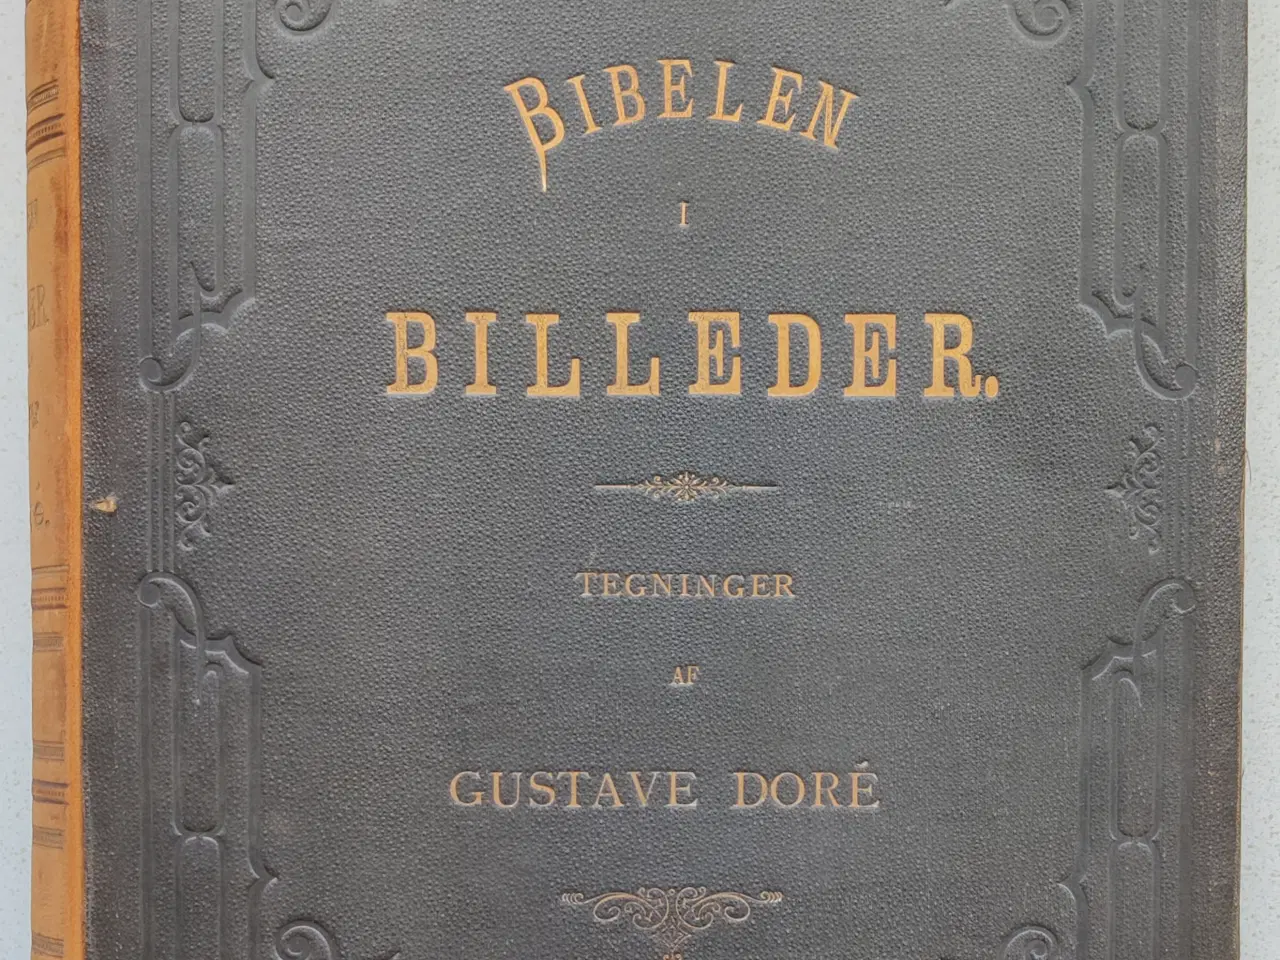 Billede 4 - Bibelen i billeder 1878, Gustave Doré